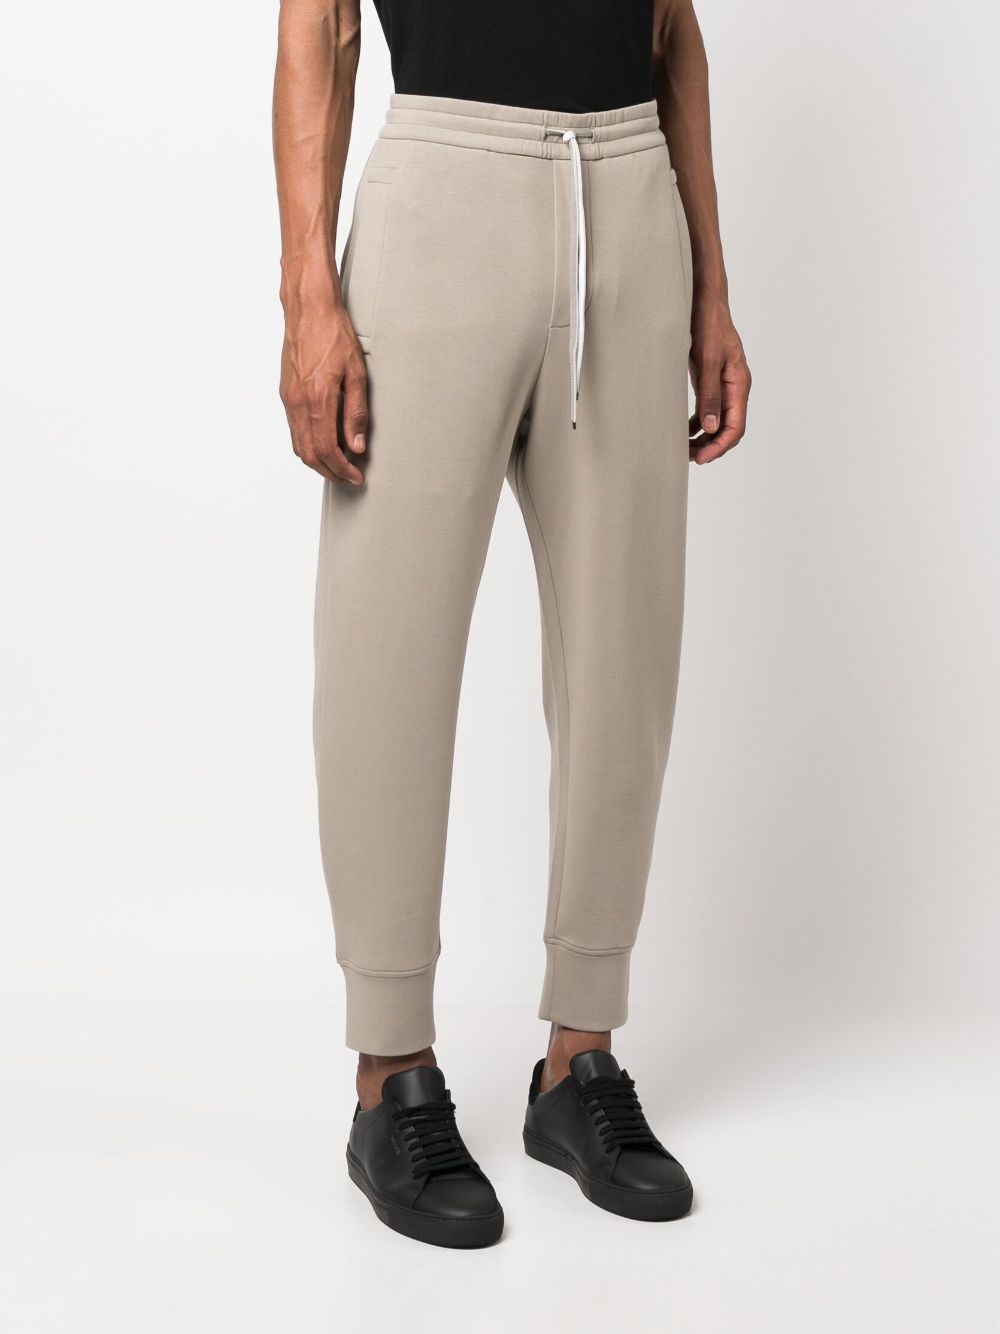 Pantalone Jogger in Double Jersey / Beige - Ideal Moda